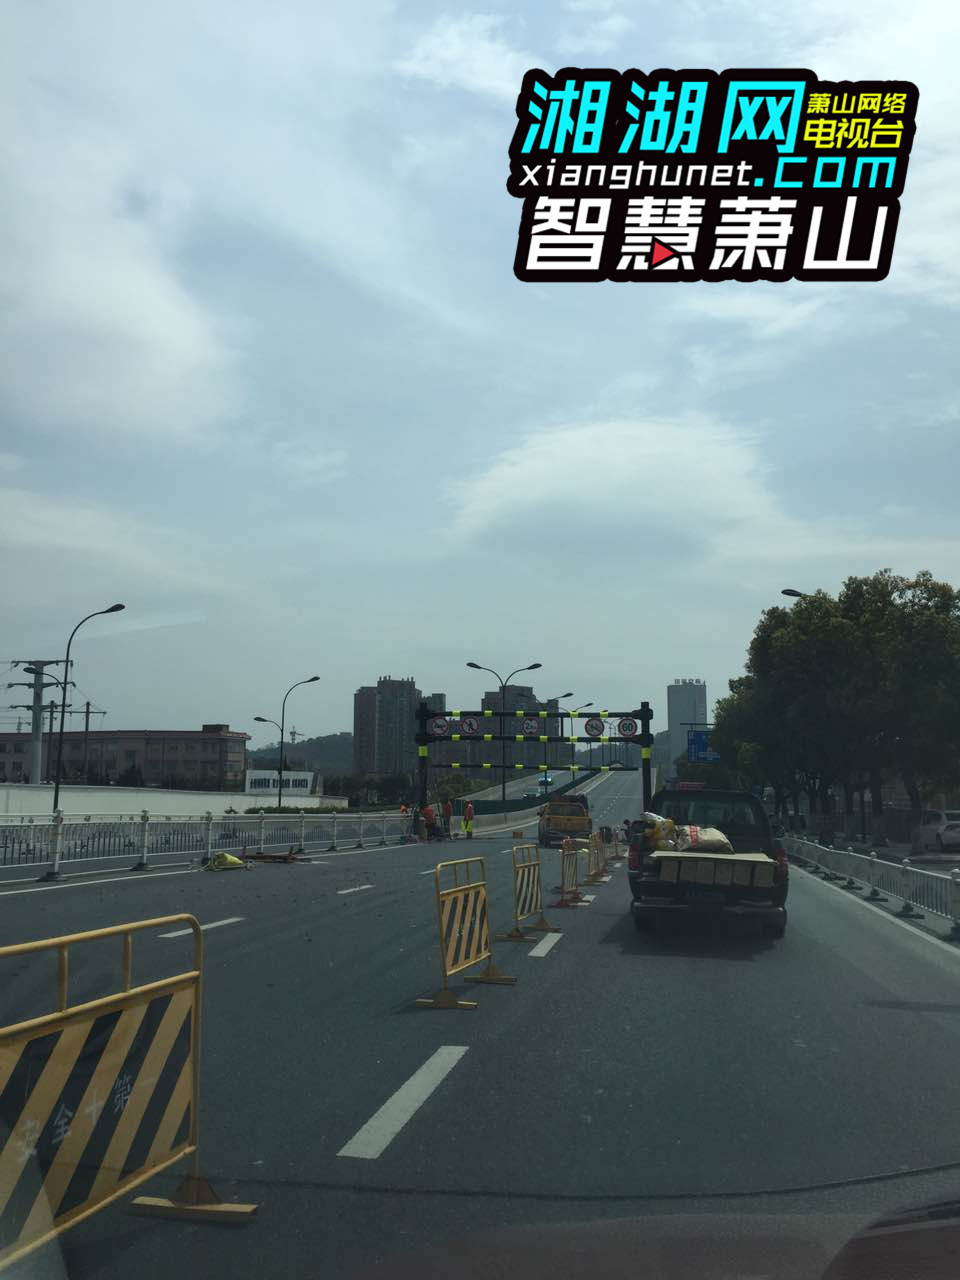 网友报料:通惠路高架有路段在养护 过往车辆注意